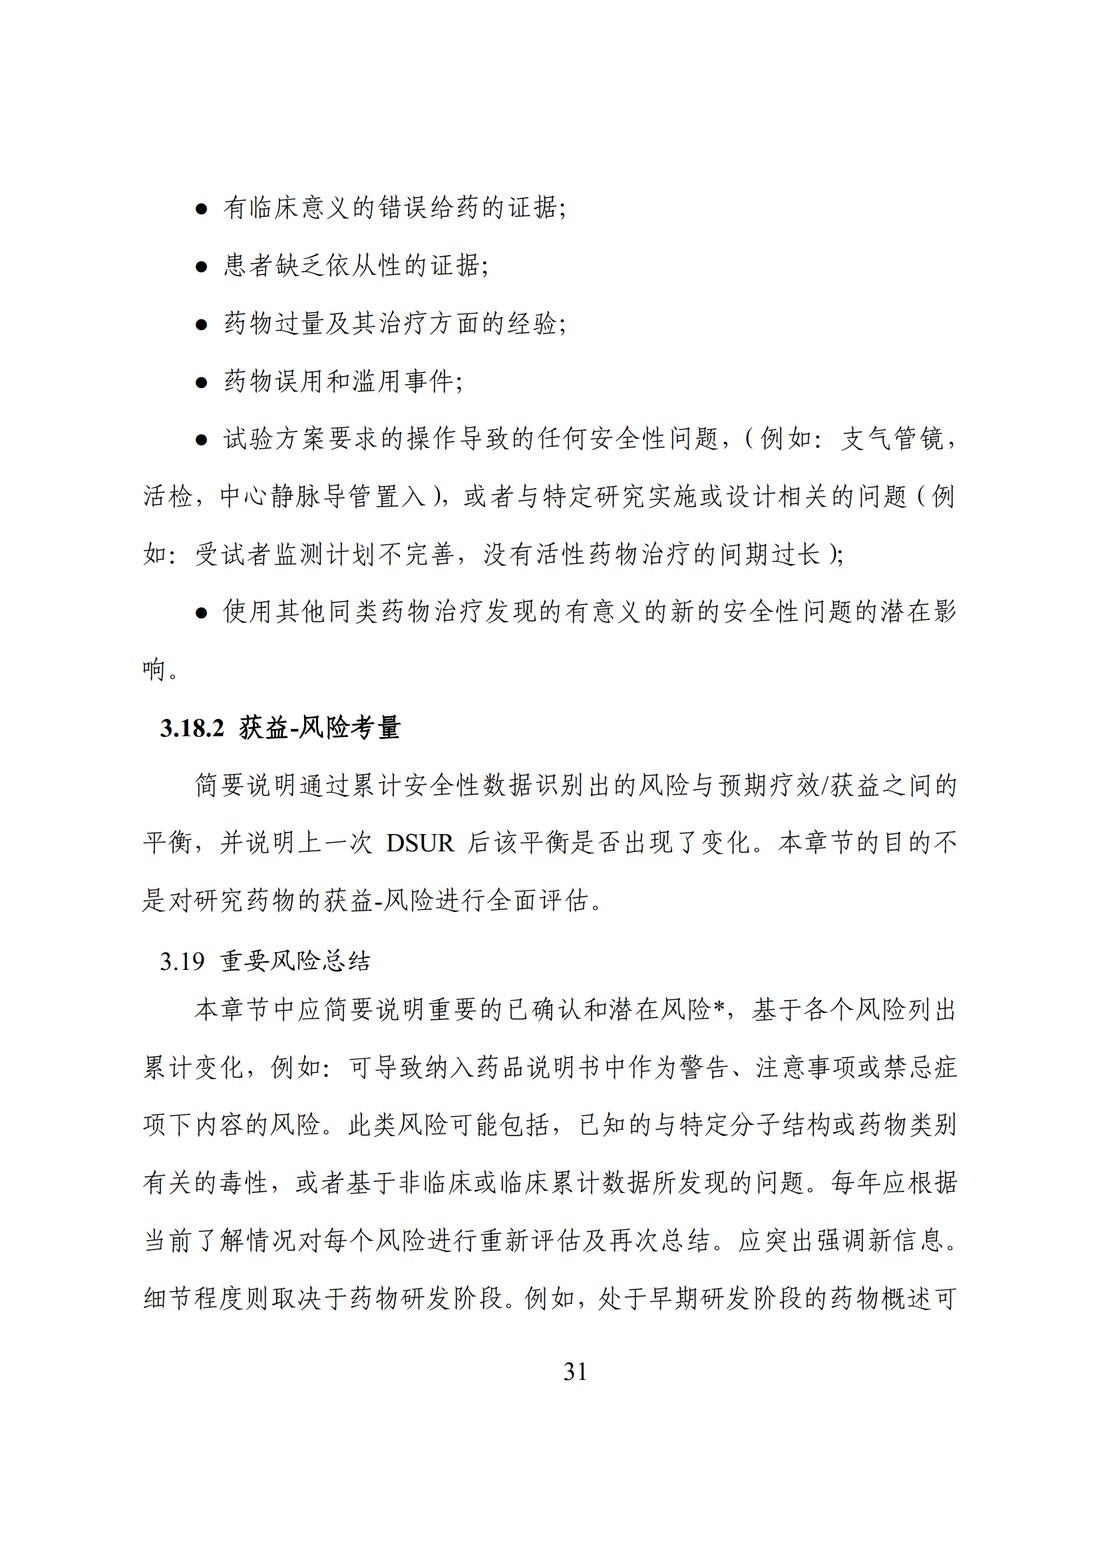 E2F 研发期间安全性更新报告(中文翻译公开征求意见稿)_36.jpg